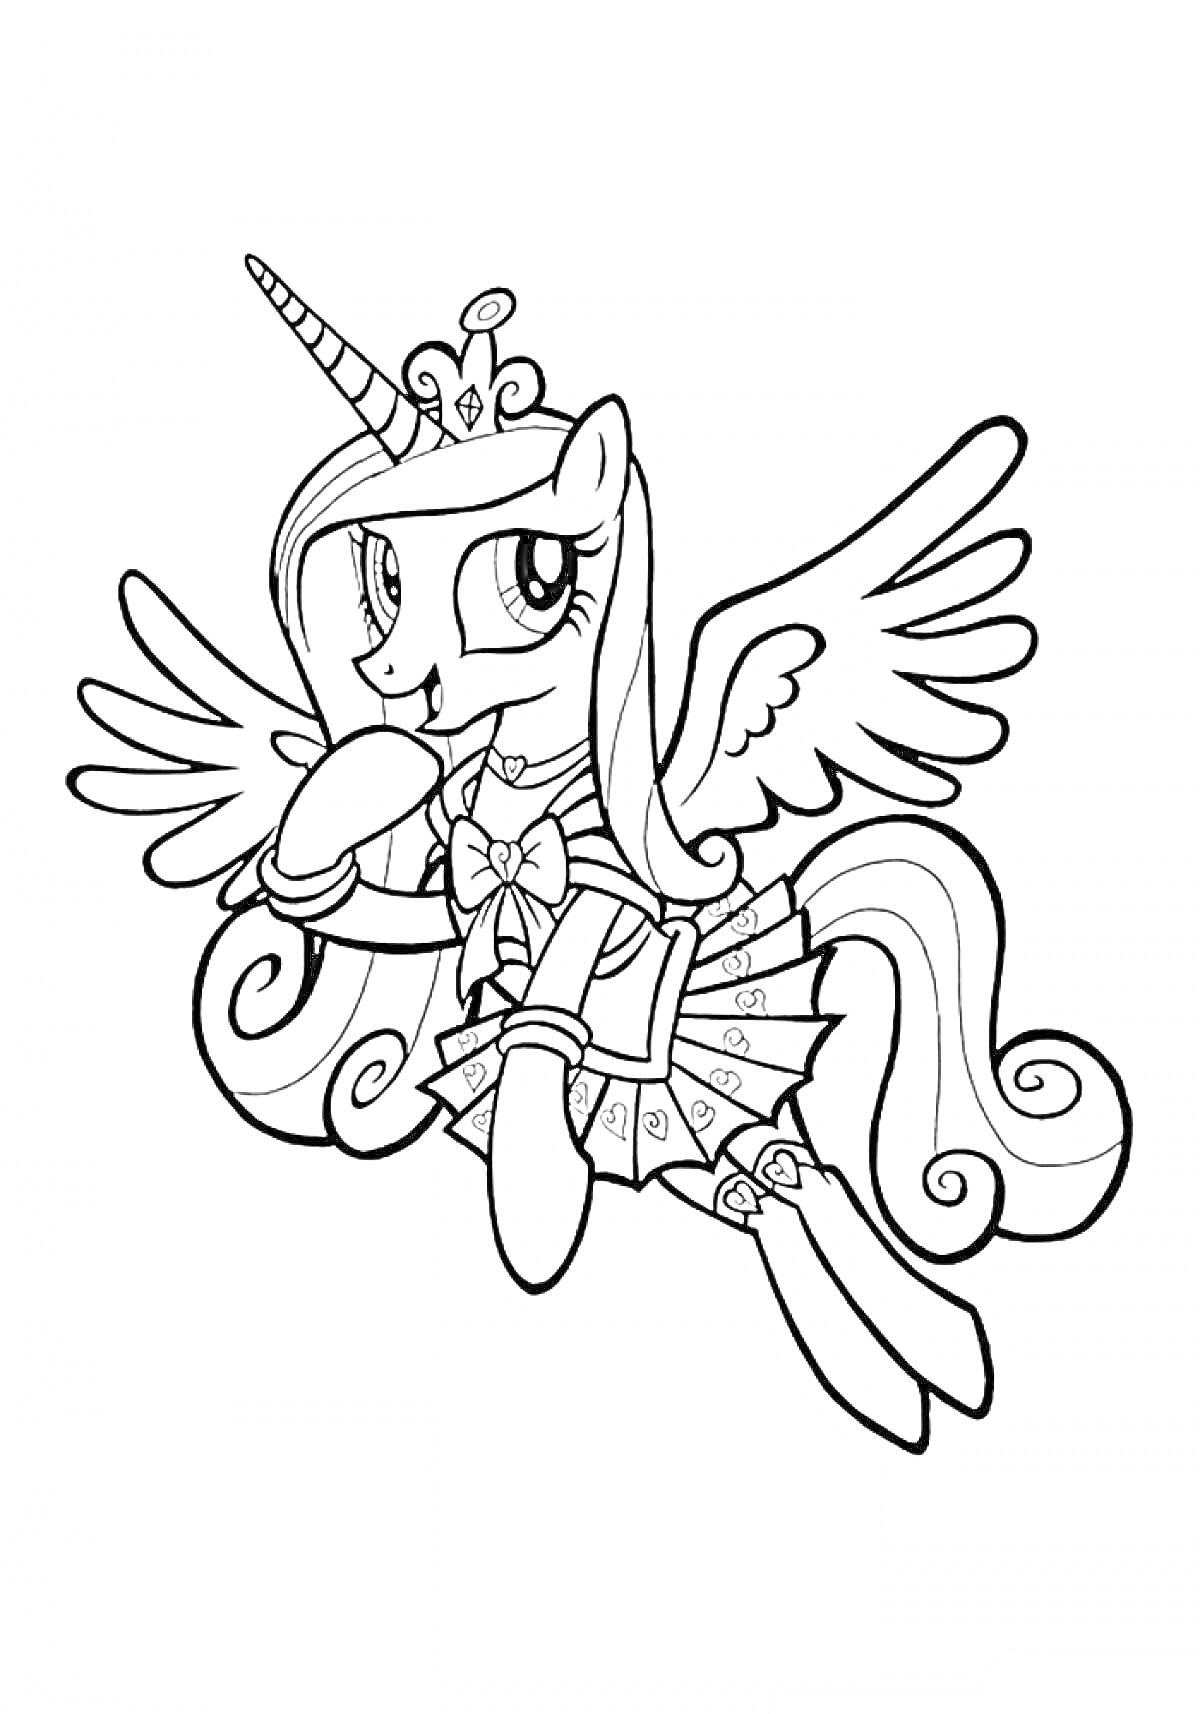 Пони Каденс с короной, крыльями и магическим рогом, в платье с сердечками